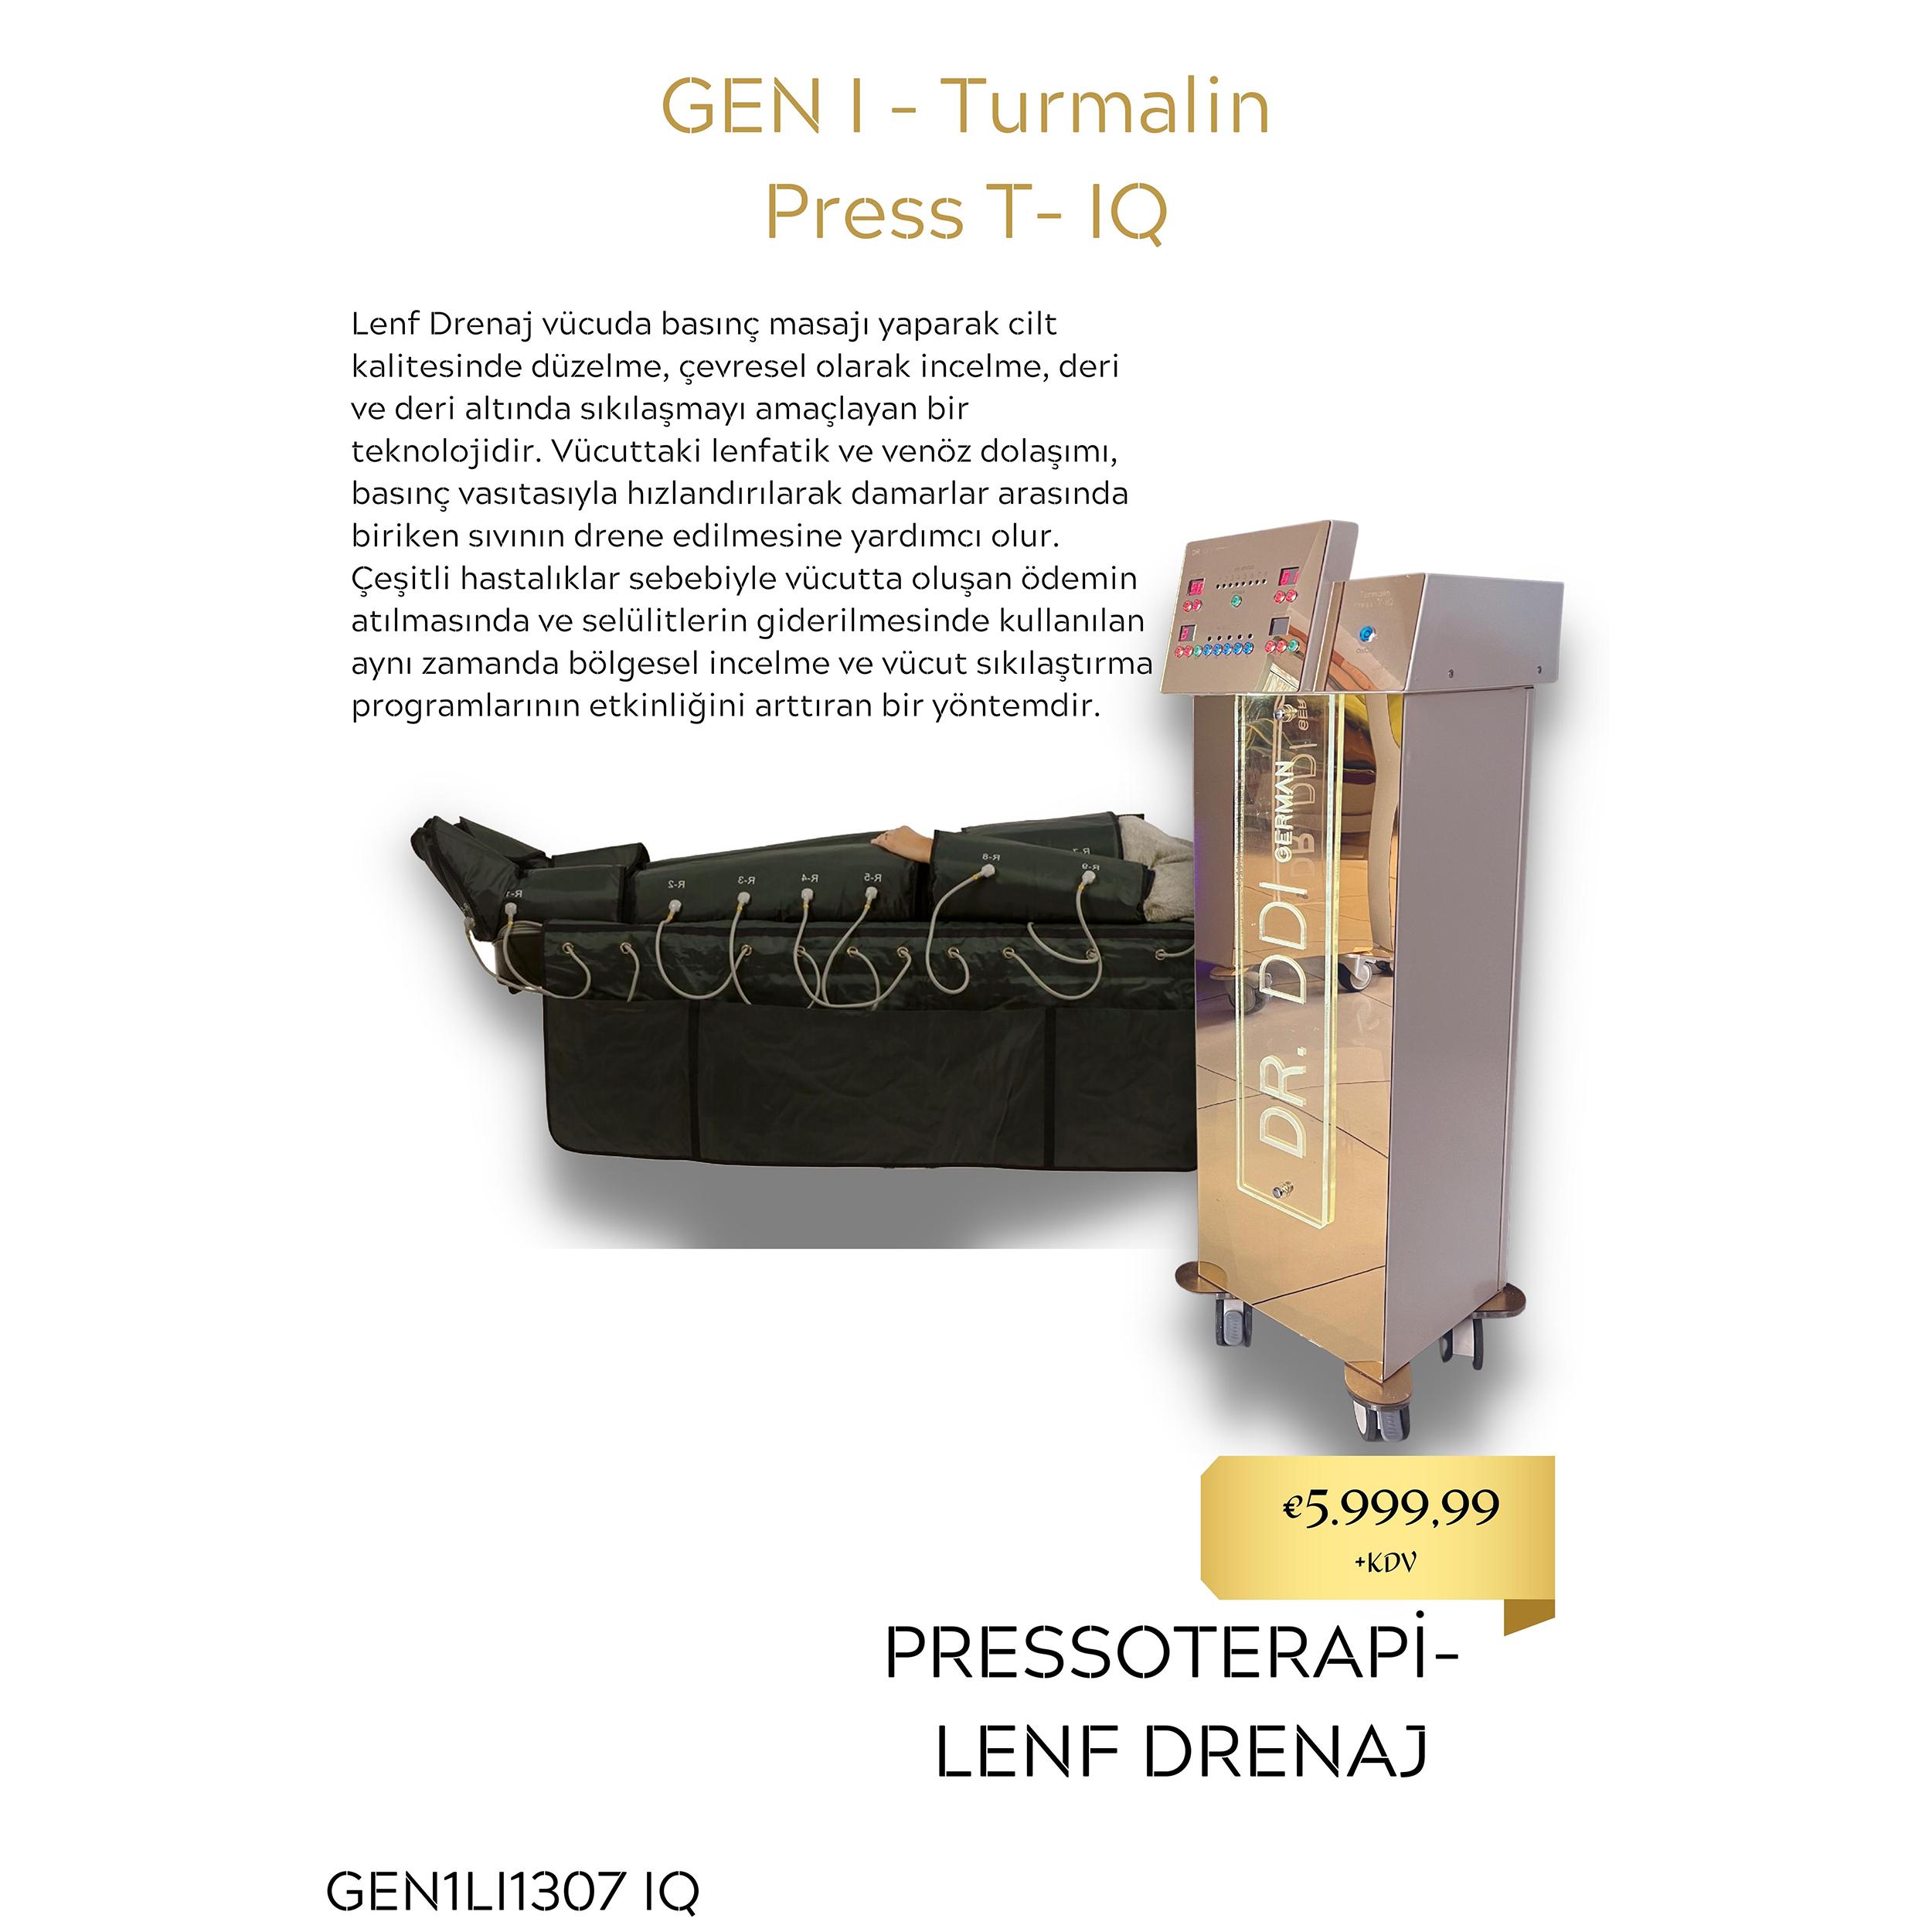 GEN I - Turmalin Press T- IQ